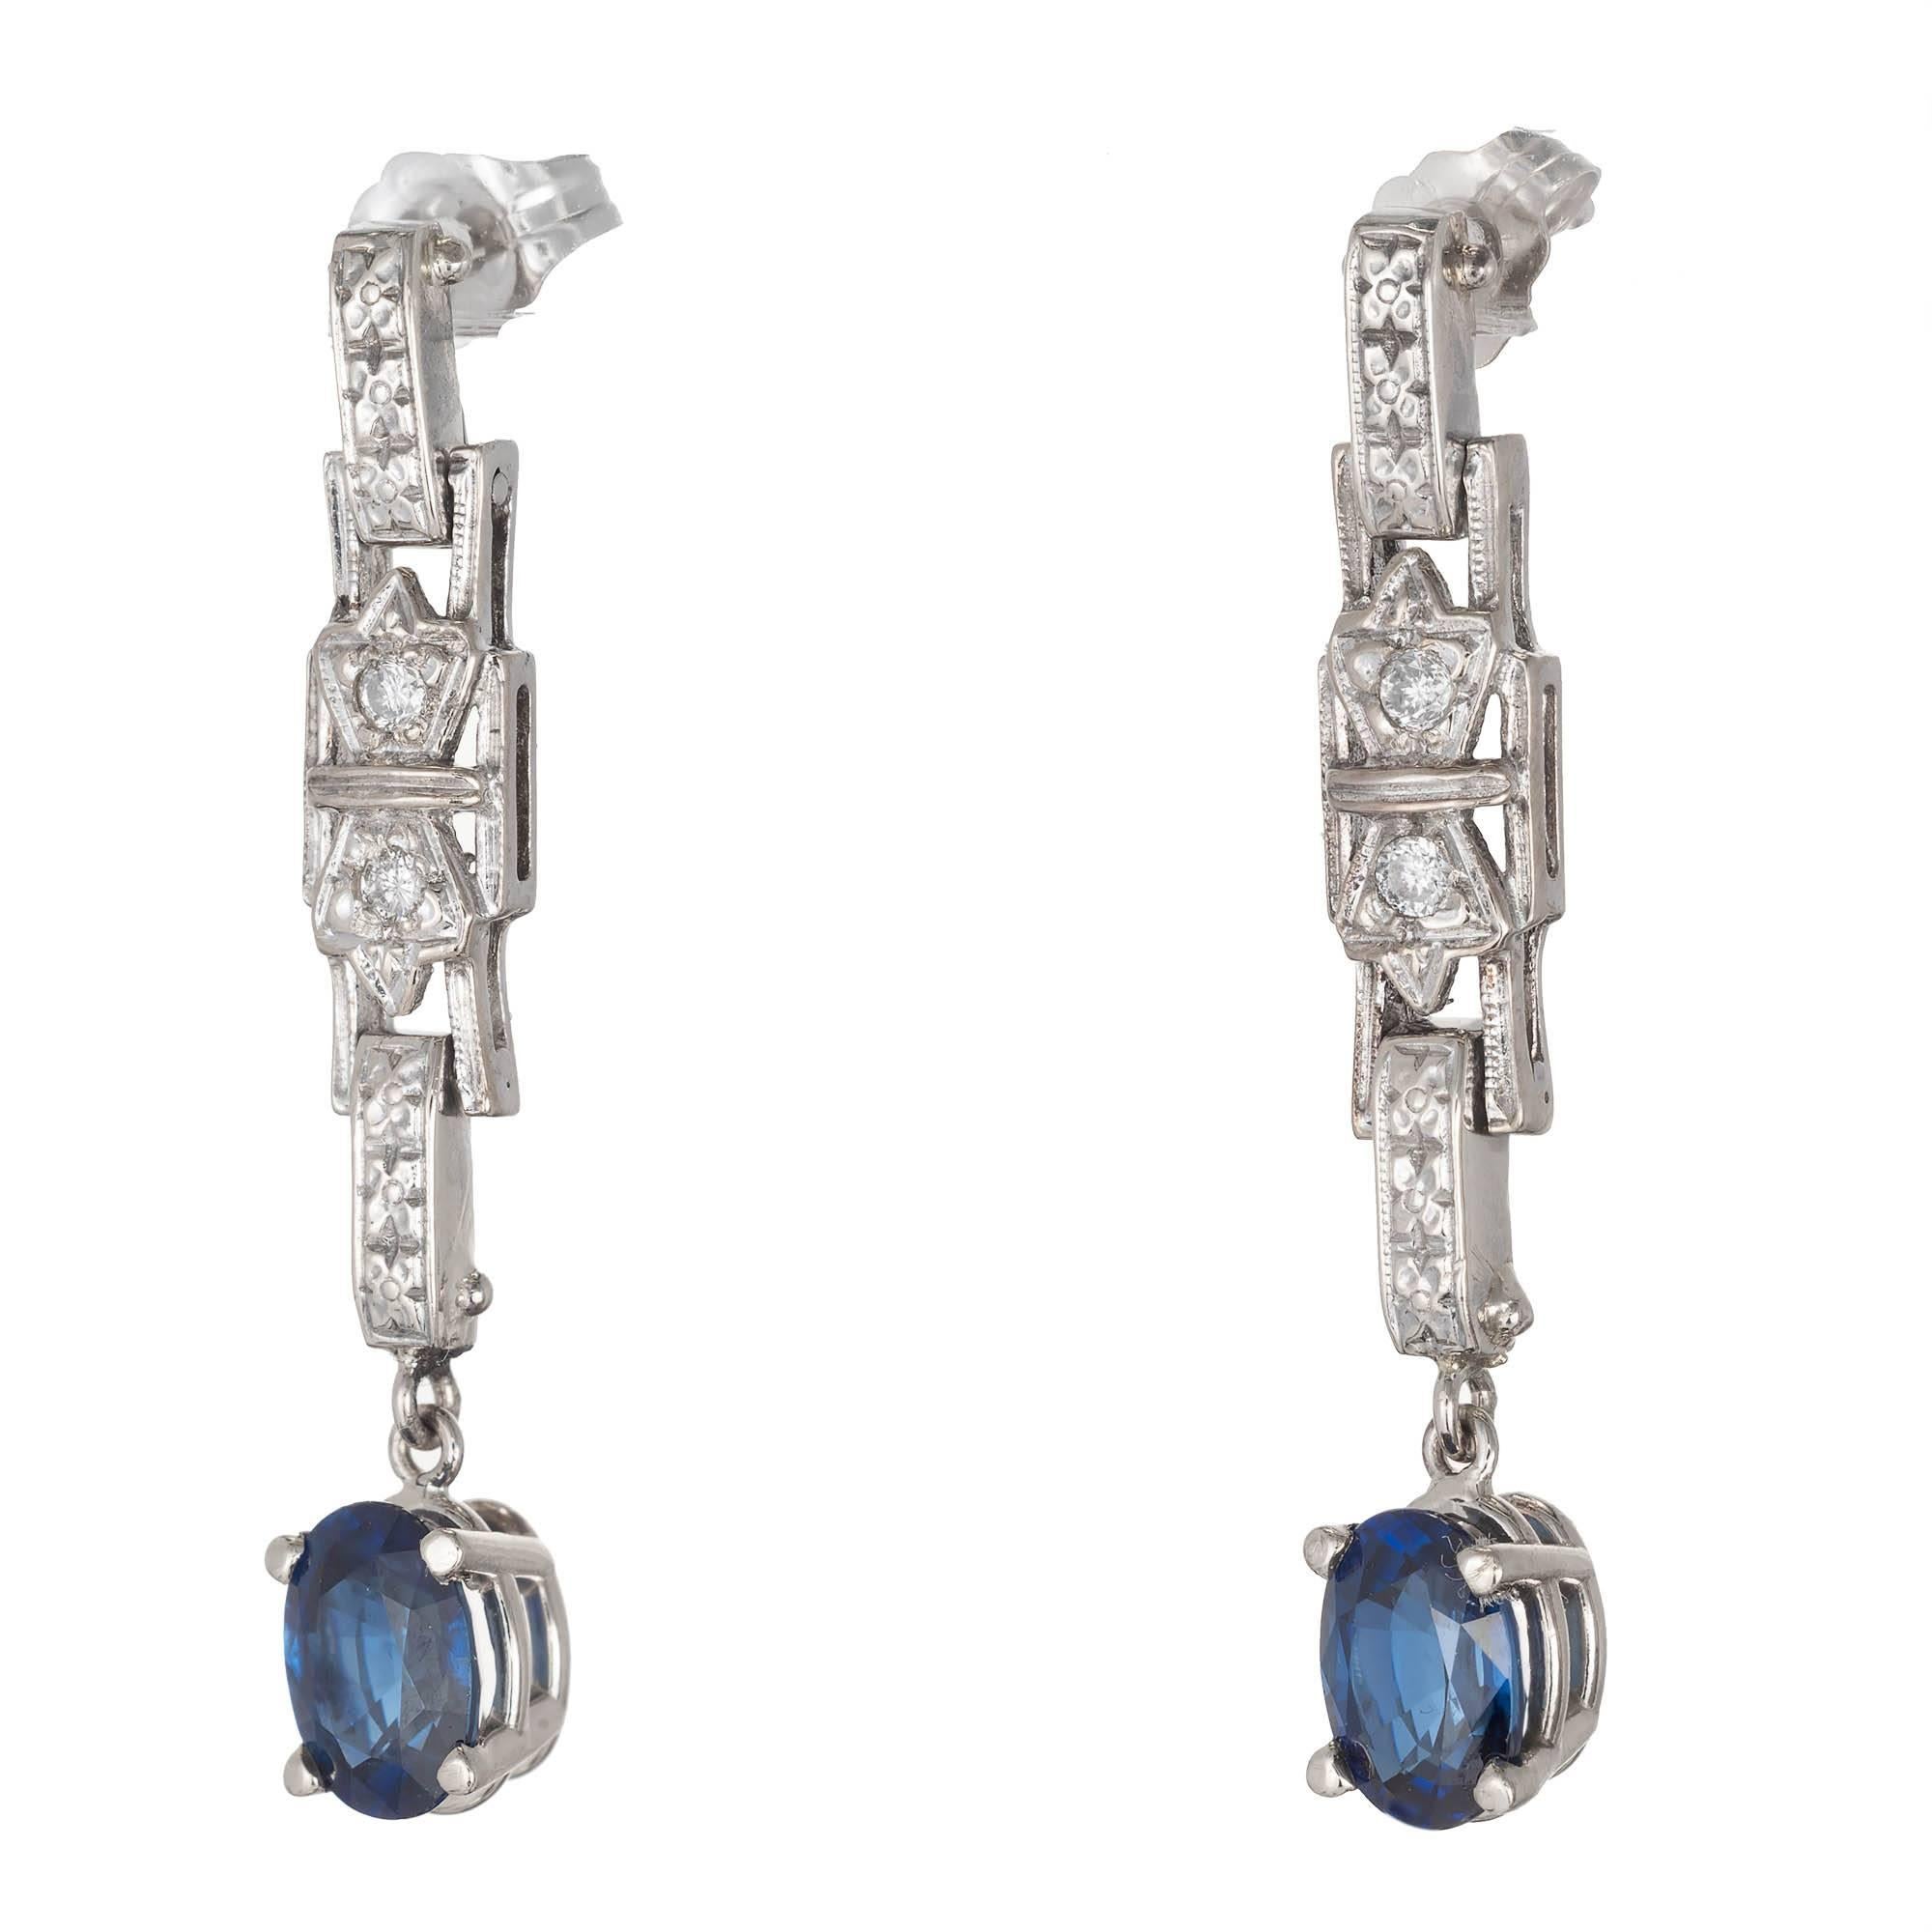 Art Deco Boucles d'oreilles pendantes en or blanc 14k, saphir bleu bleuet et diamant. Certifié GIA comme simple chaleur seulement pas d'autres améliorations, et de petits accents de diamant.

2 saphirs bleus ovales, poids total approx. 2.00cts, VS,